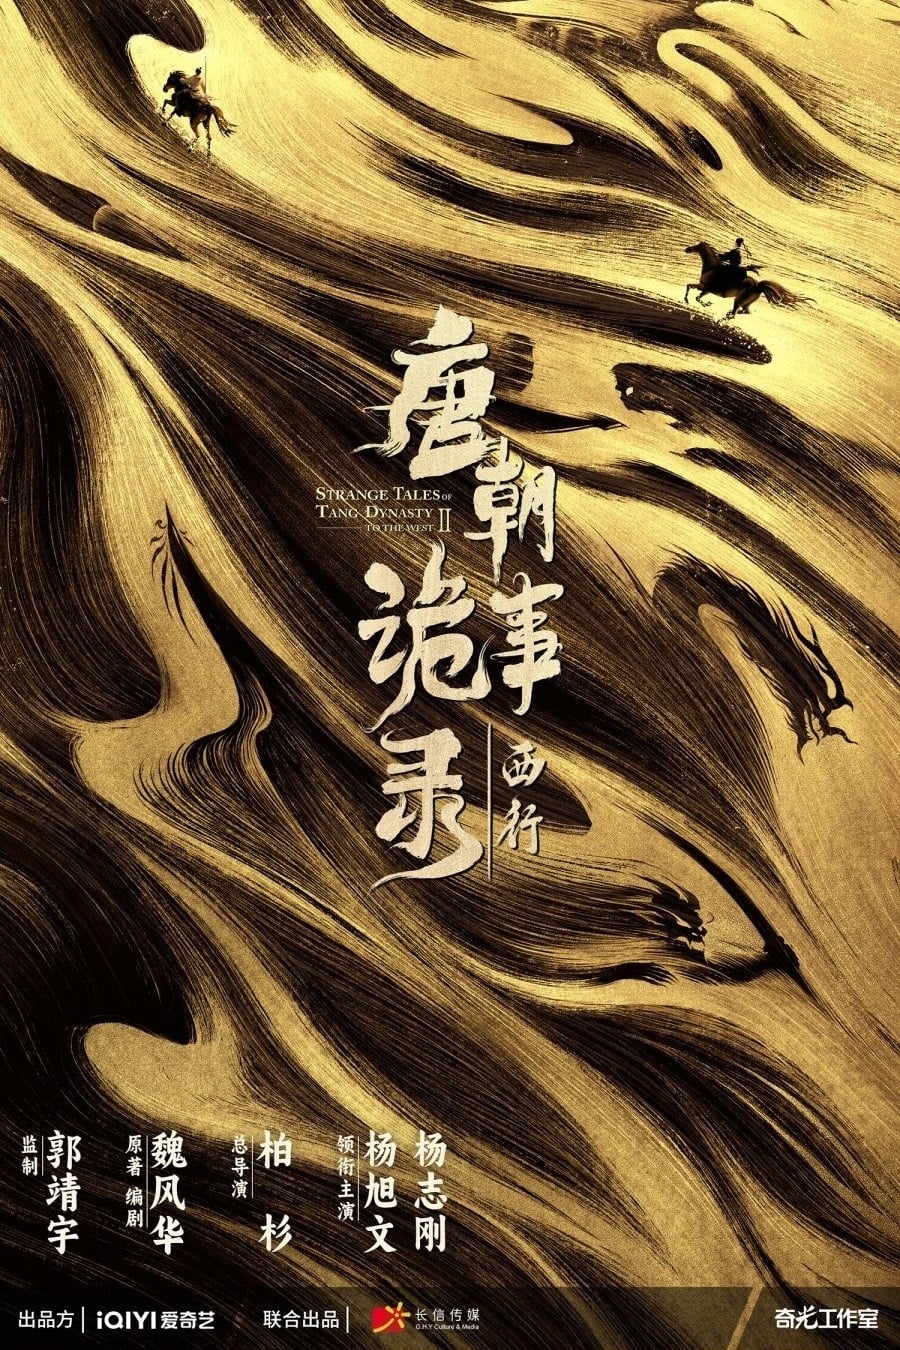 مسلسل Strange Tales of Tang Dynasty موسم 2 حلقة 12